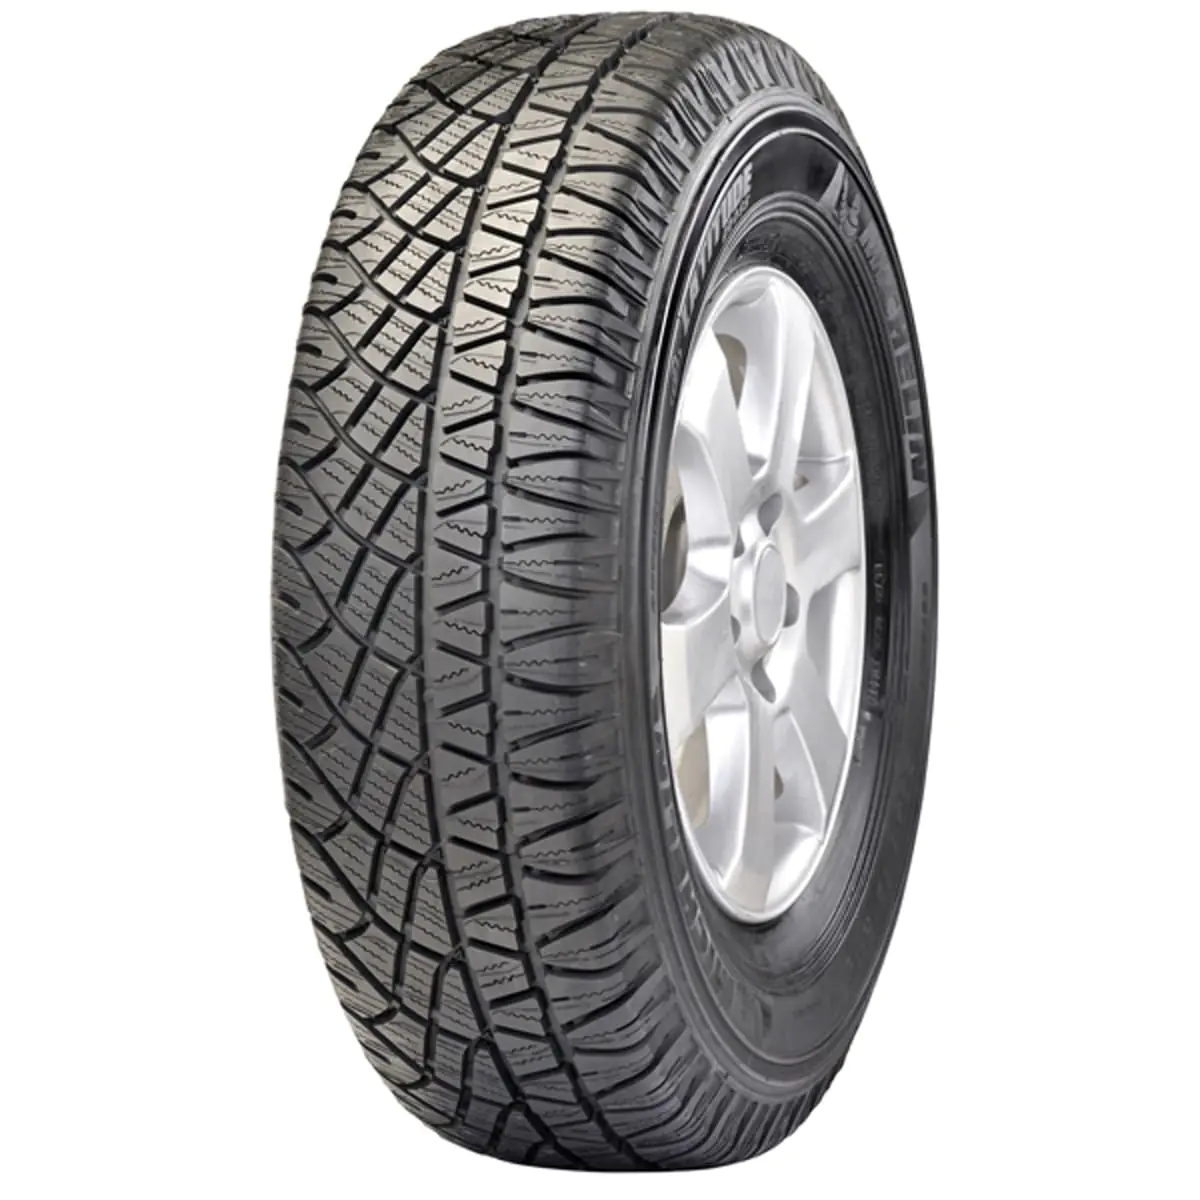 Michelin Michelin 285/65 R17 116H LATITUDE CROSS pneumatici nuovi Estivo 